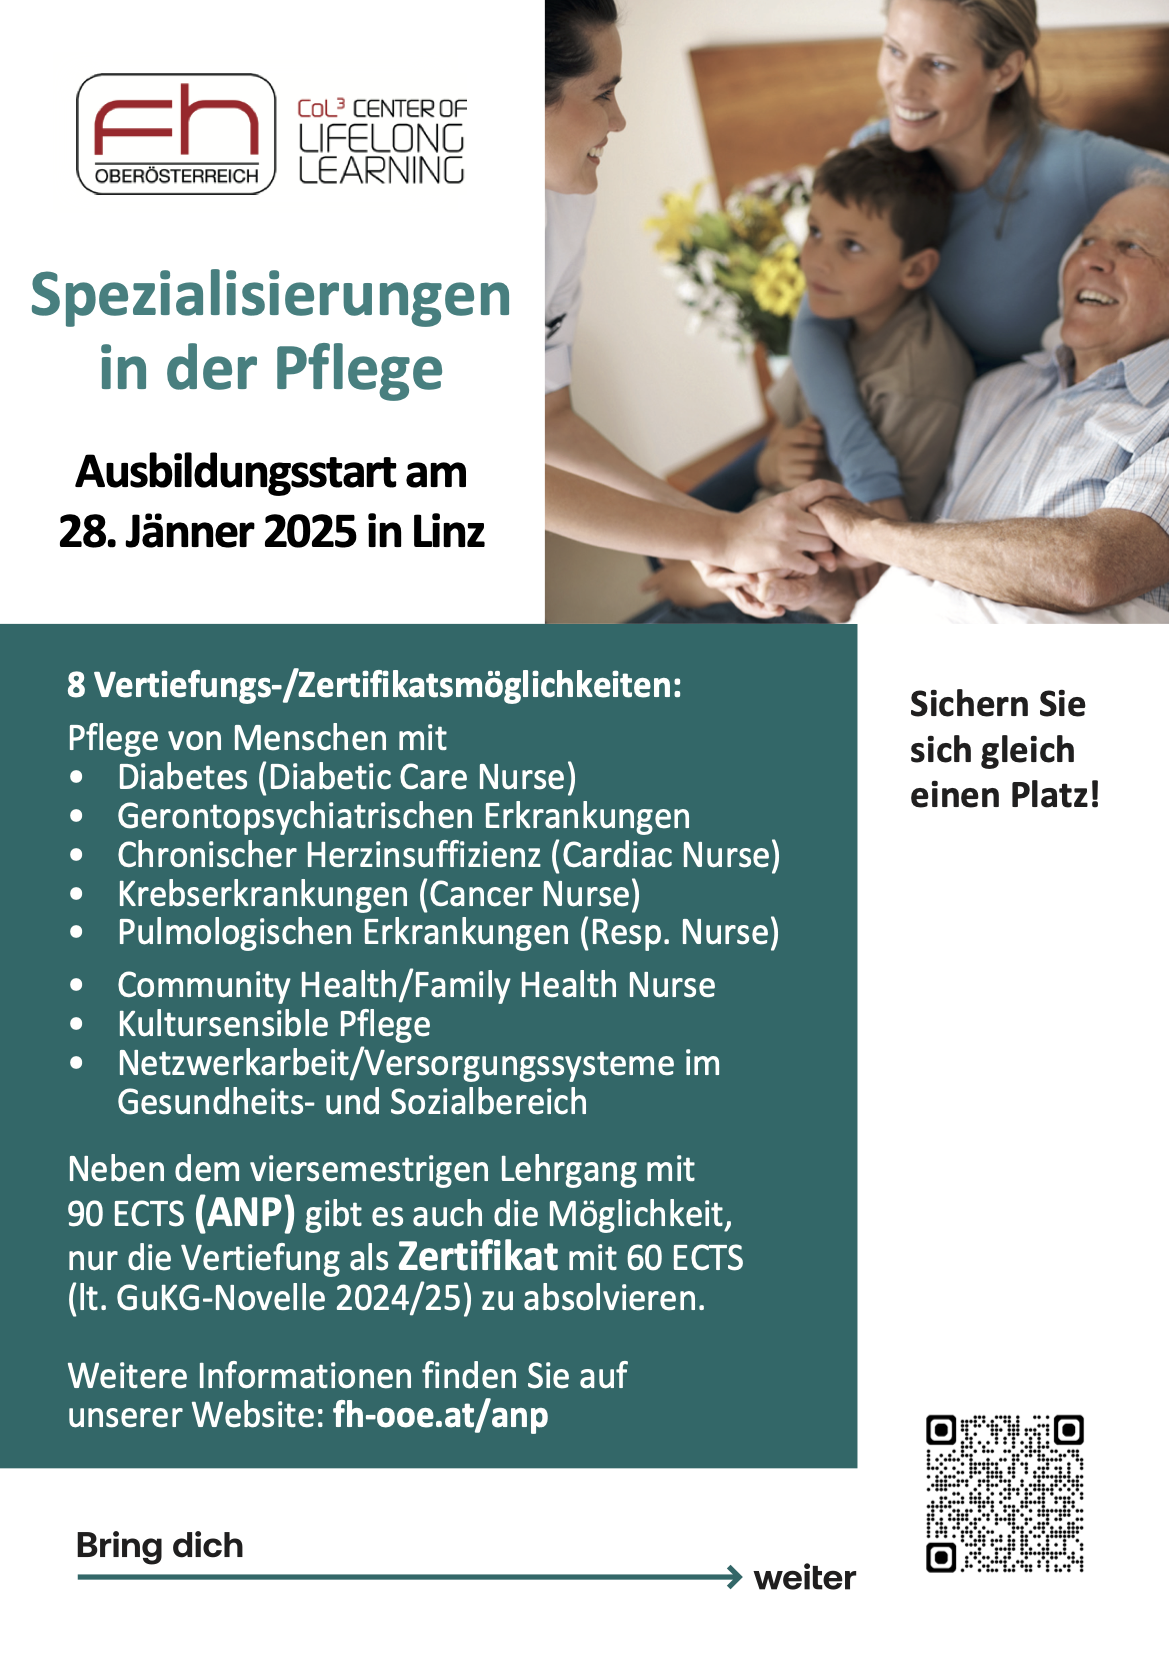 Spezialisierungen in der Pflege bei der FH Oberösterreich